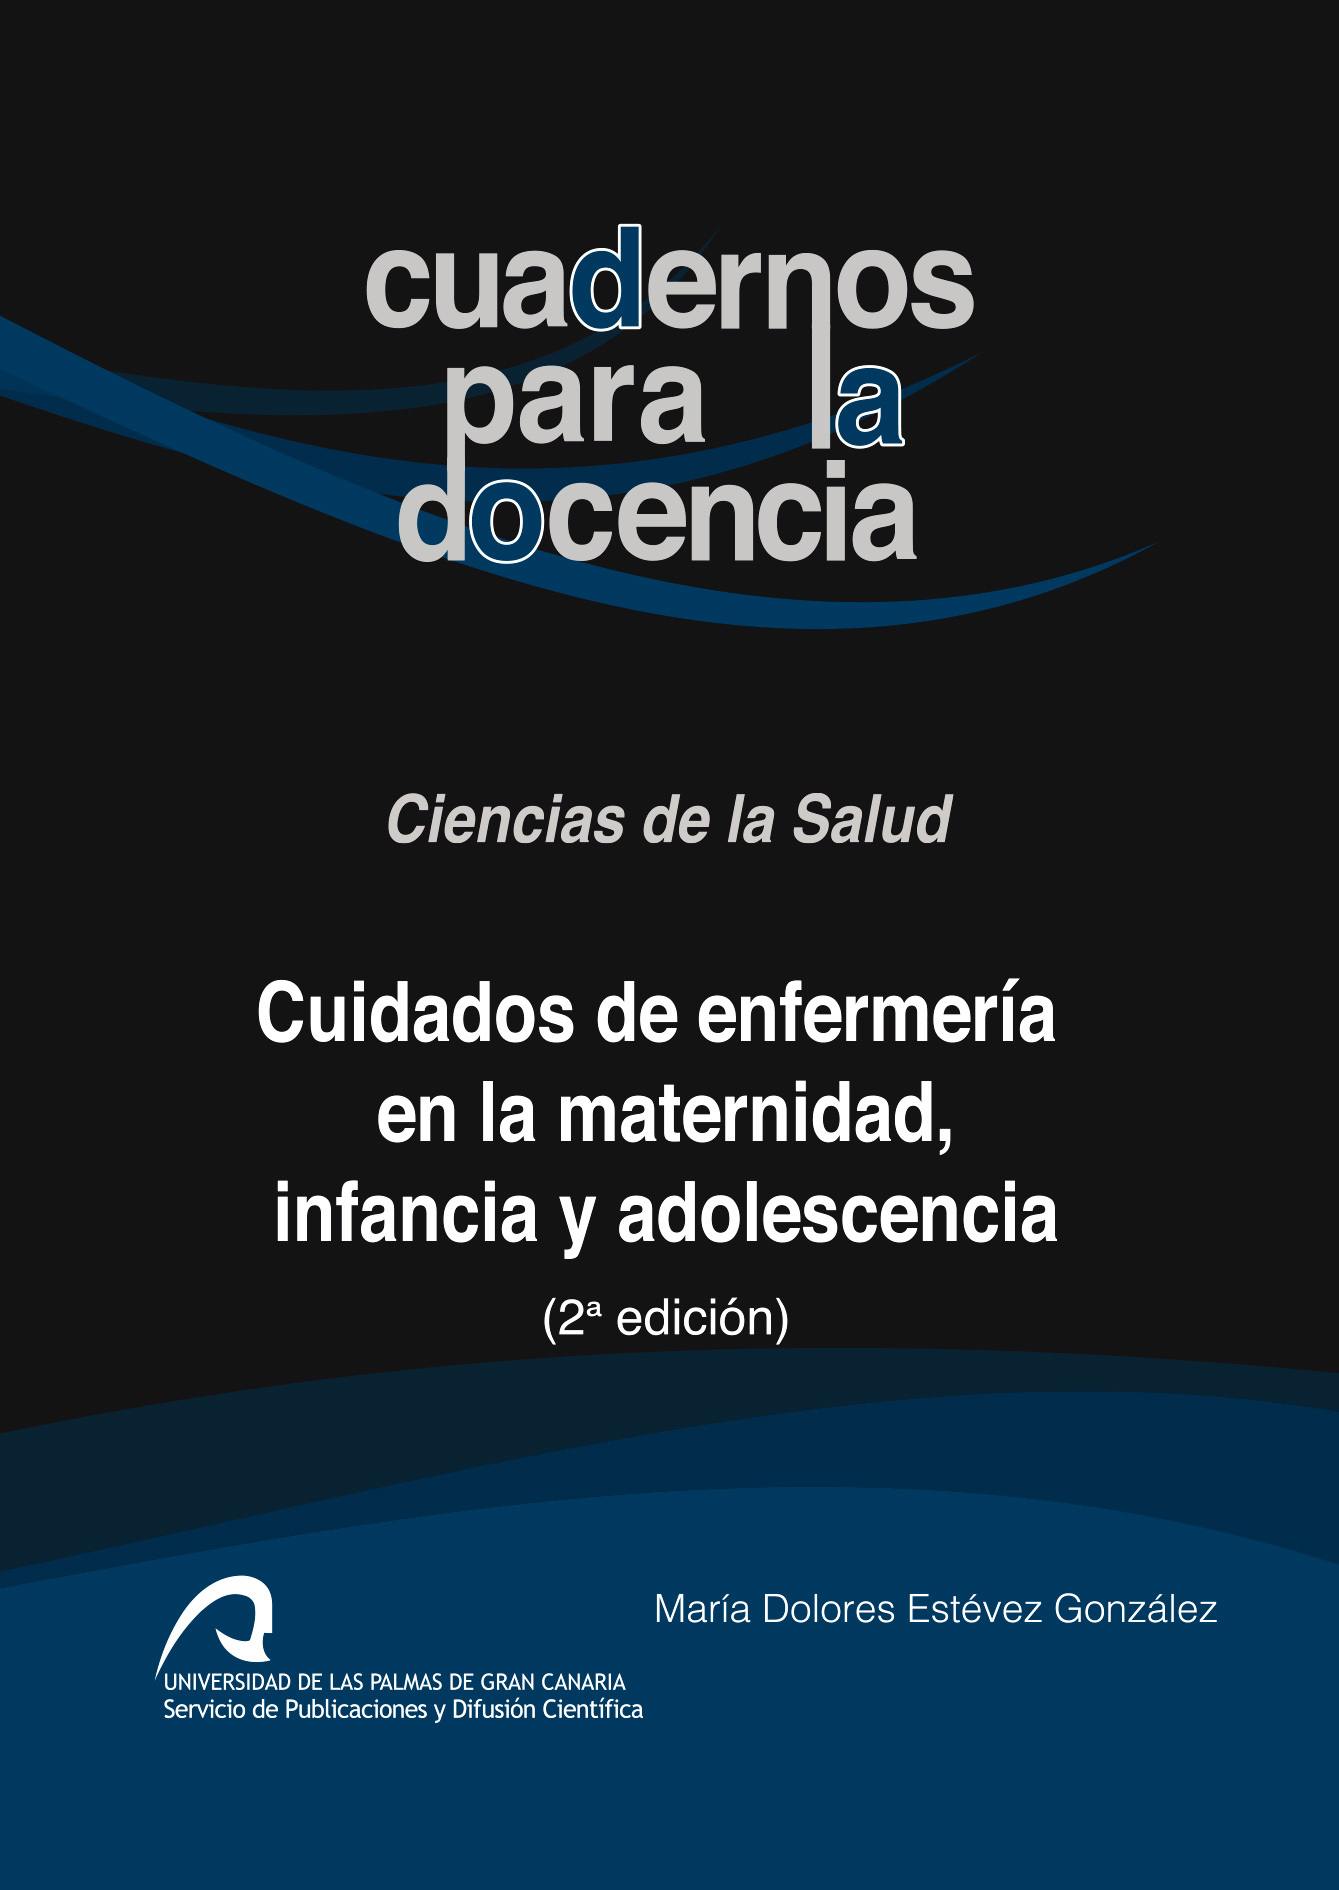 Cuidados de enfermería en la maternidad, infancia y adolescencia -  Universidad de Las Palmas de Gran Canaria